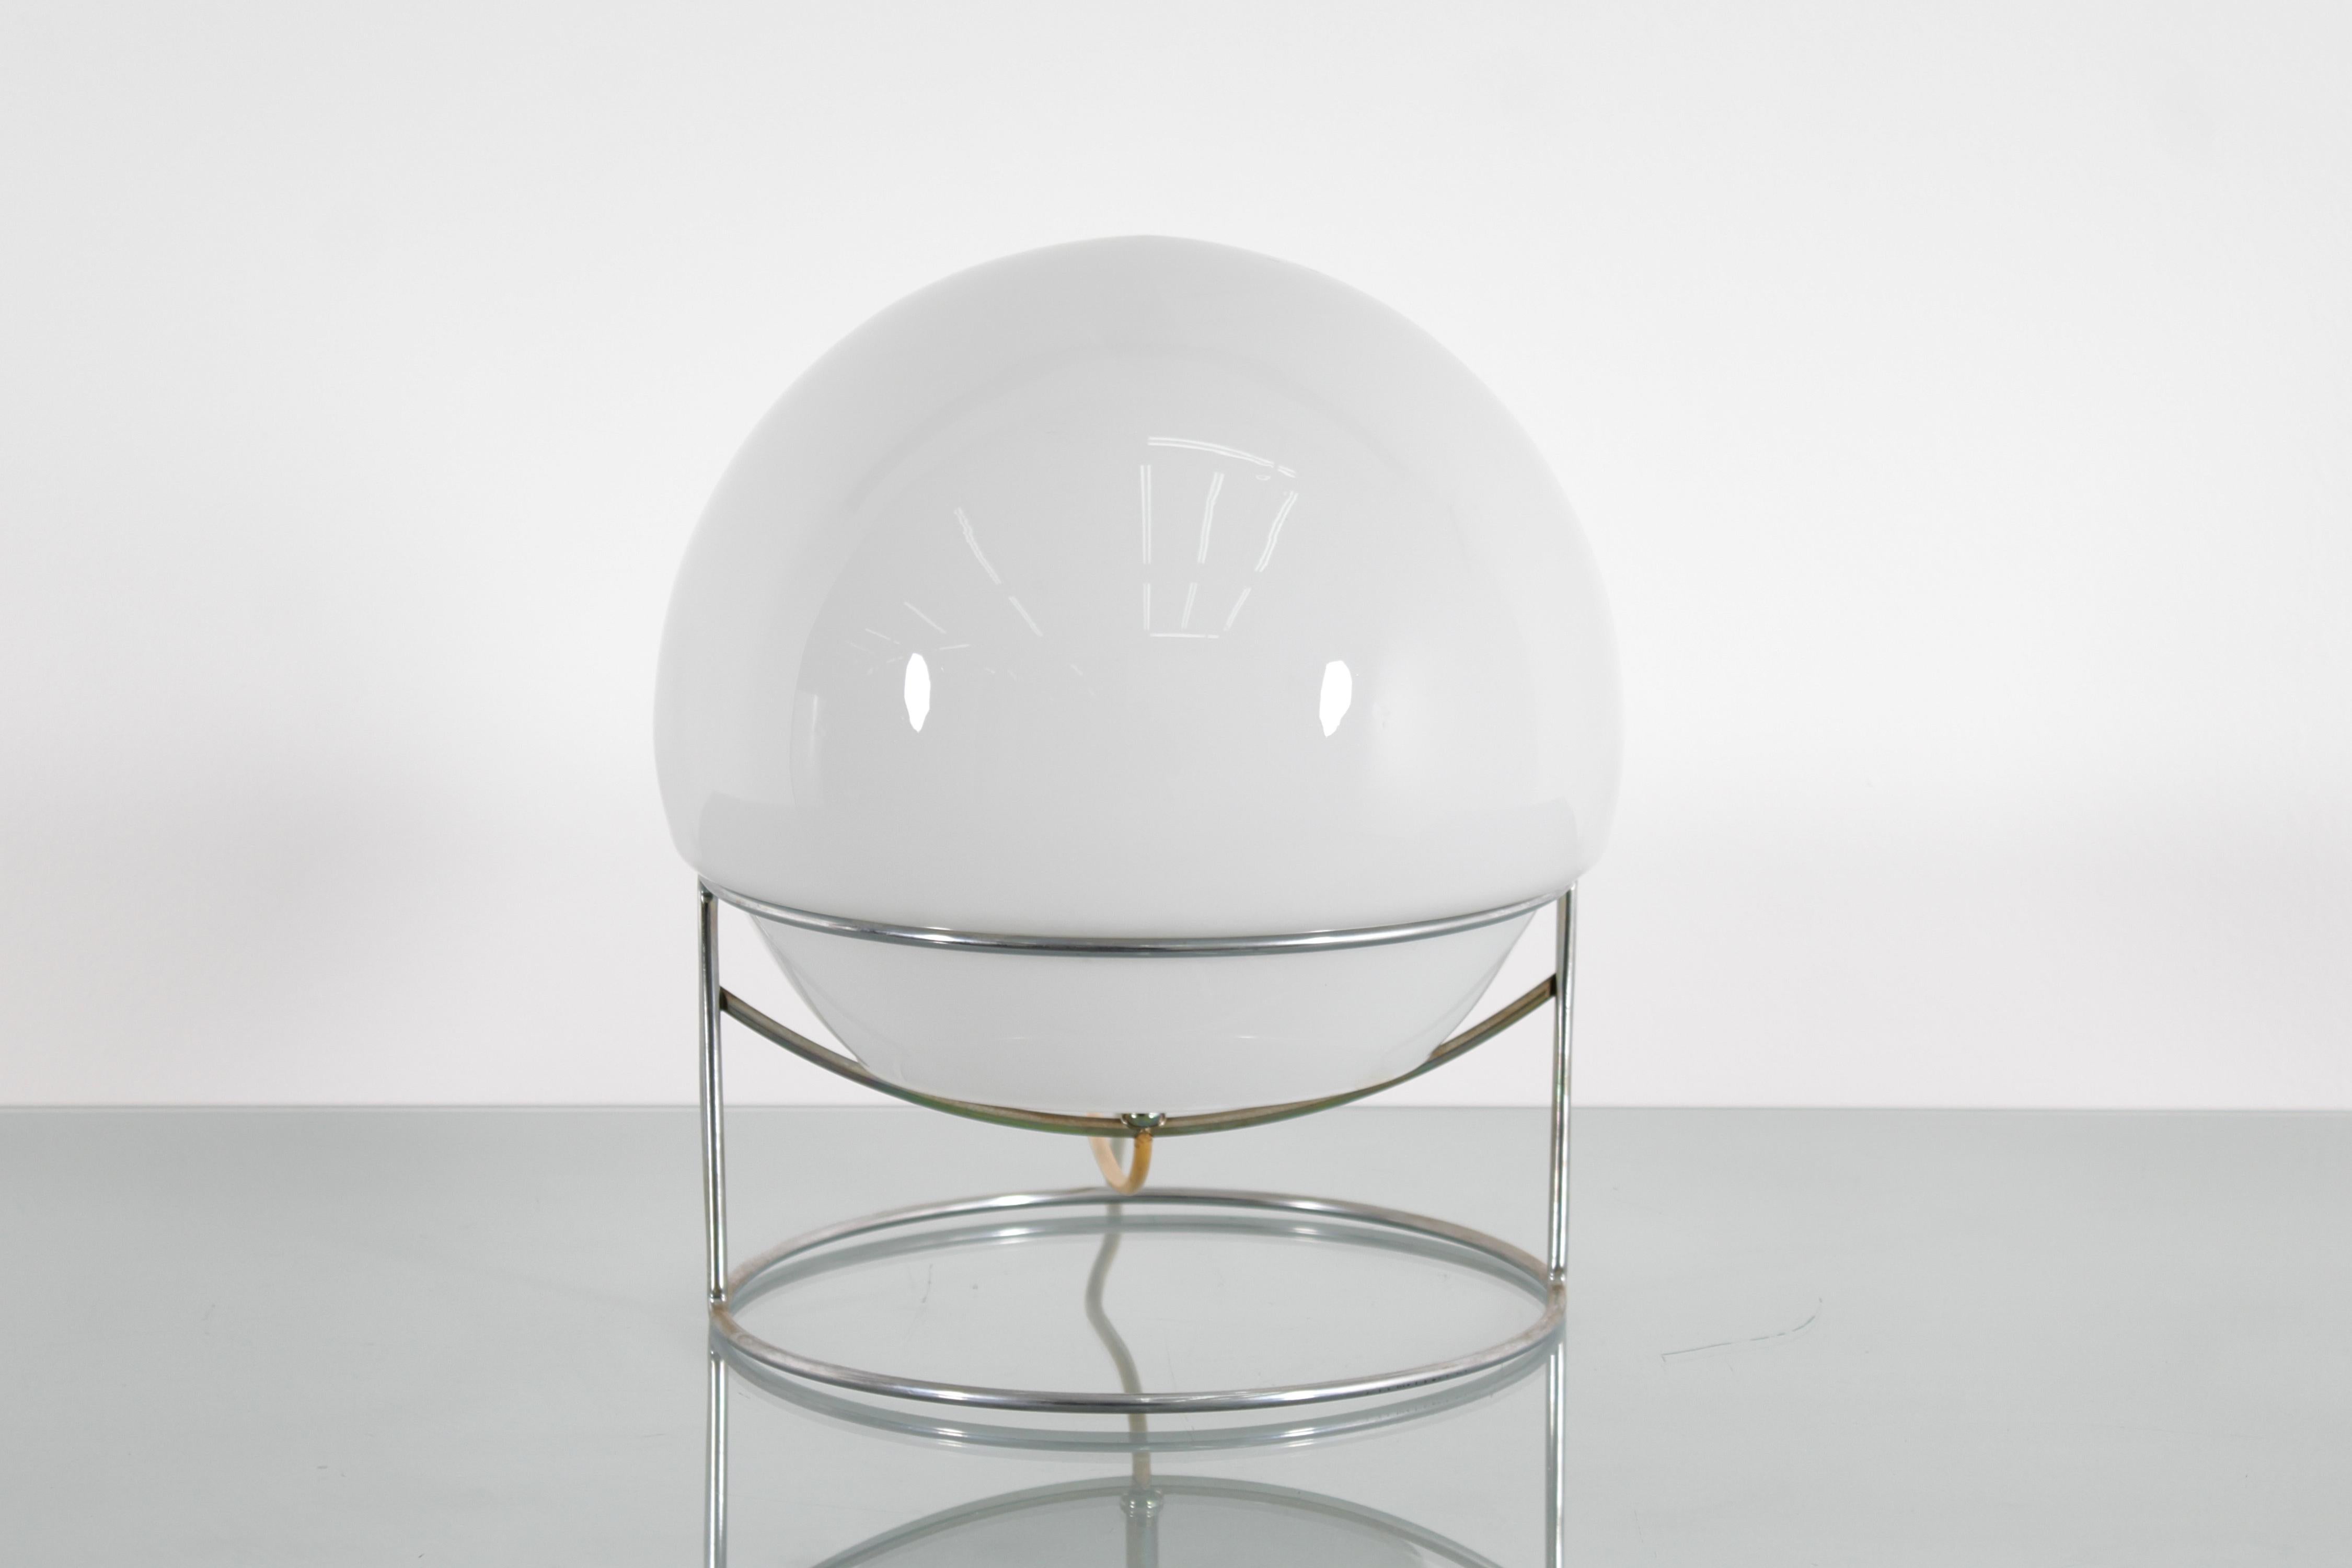 Sehr schönes Beispiel einer Space Age Tischleuchte mit einer kreisförmigen Struktur aus verchromtem Stahlstab, auf dem der halbkugelförmige Diffusor aus milchig weißem Glas sitzt. Italienische Produktion im Stil von Carlo Nason, aus den 70er Jahren.